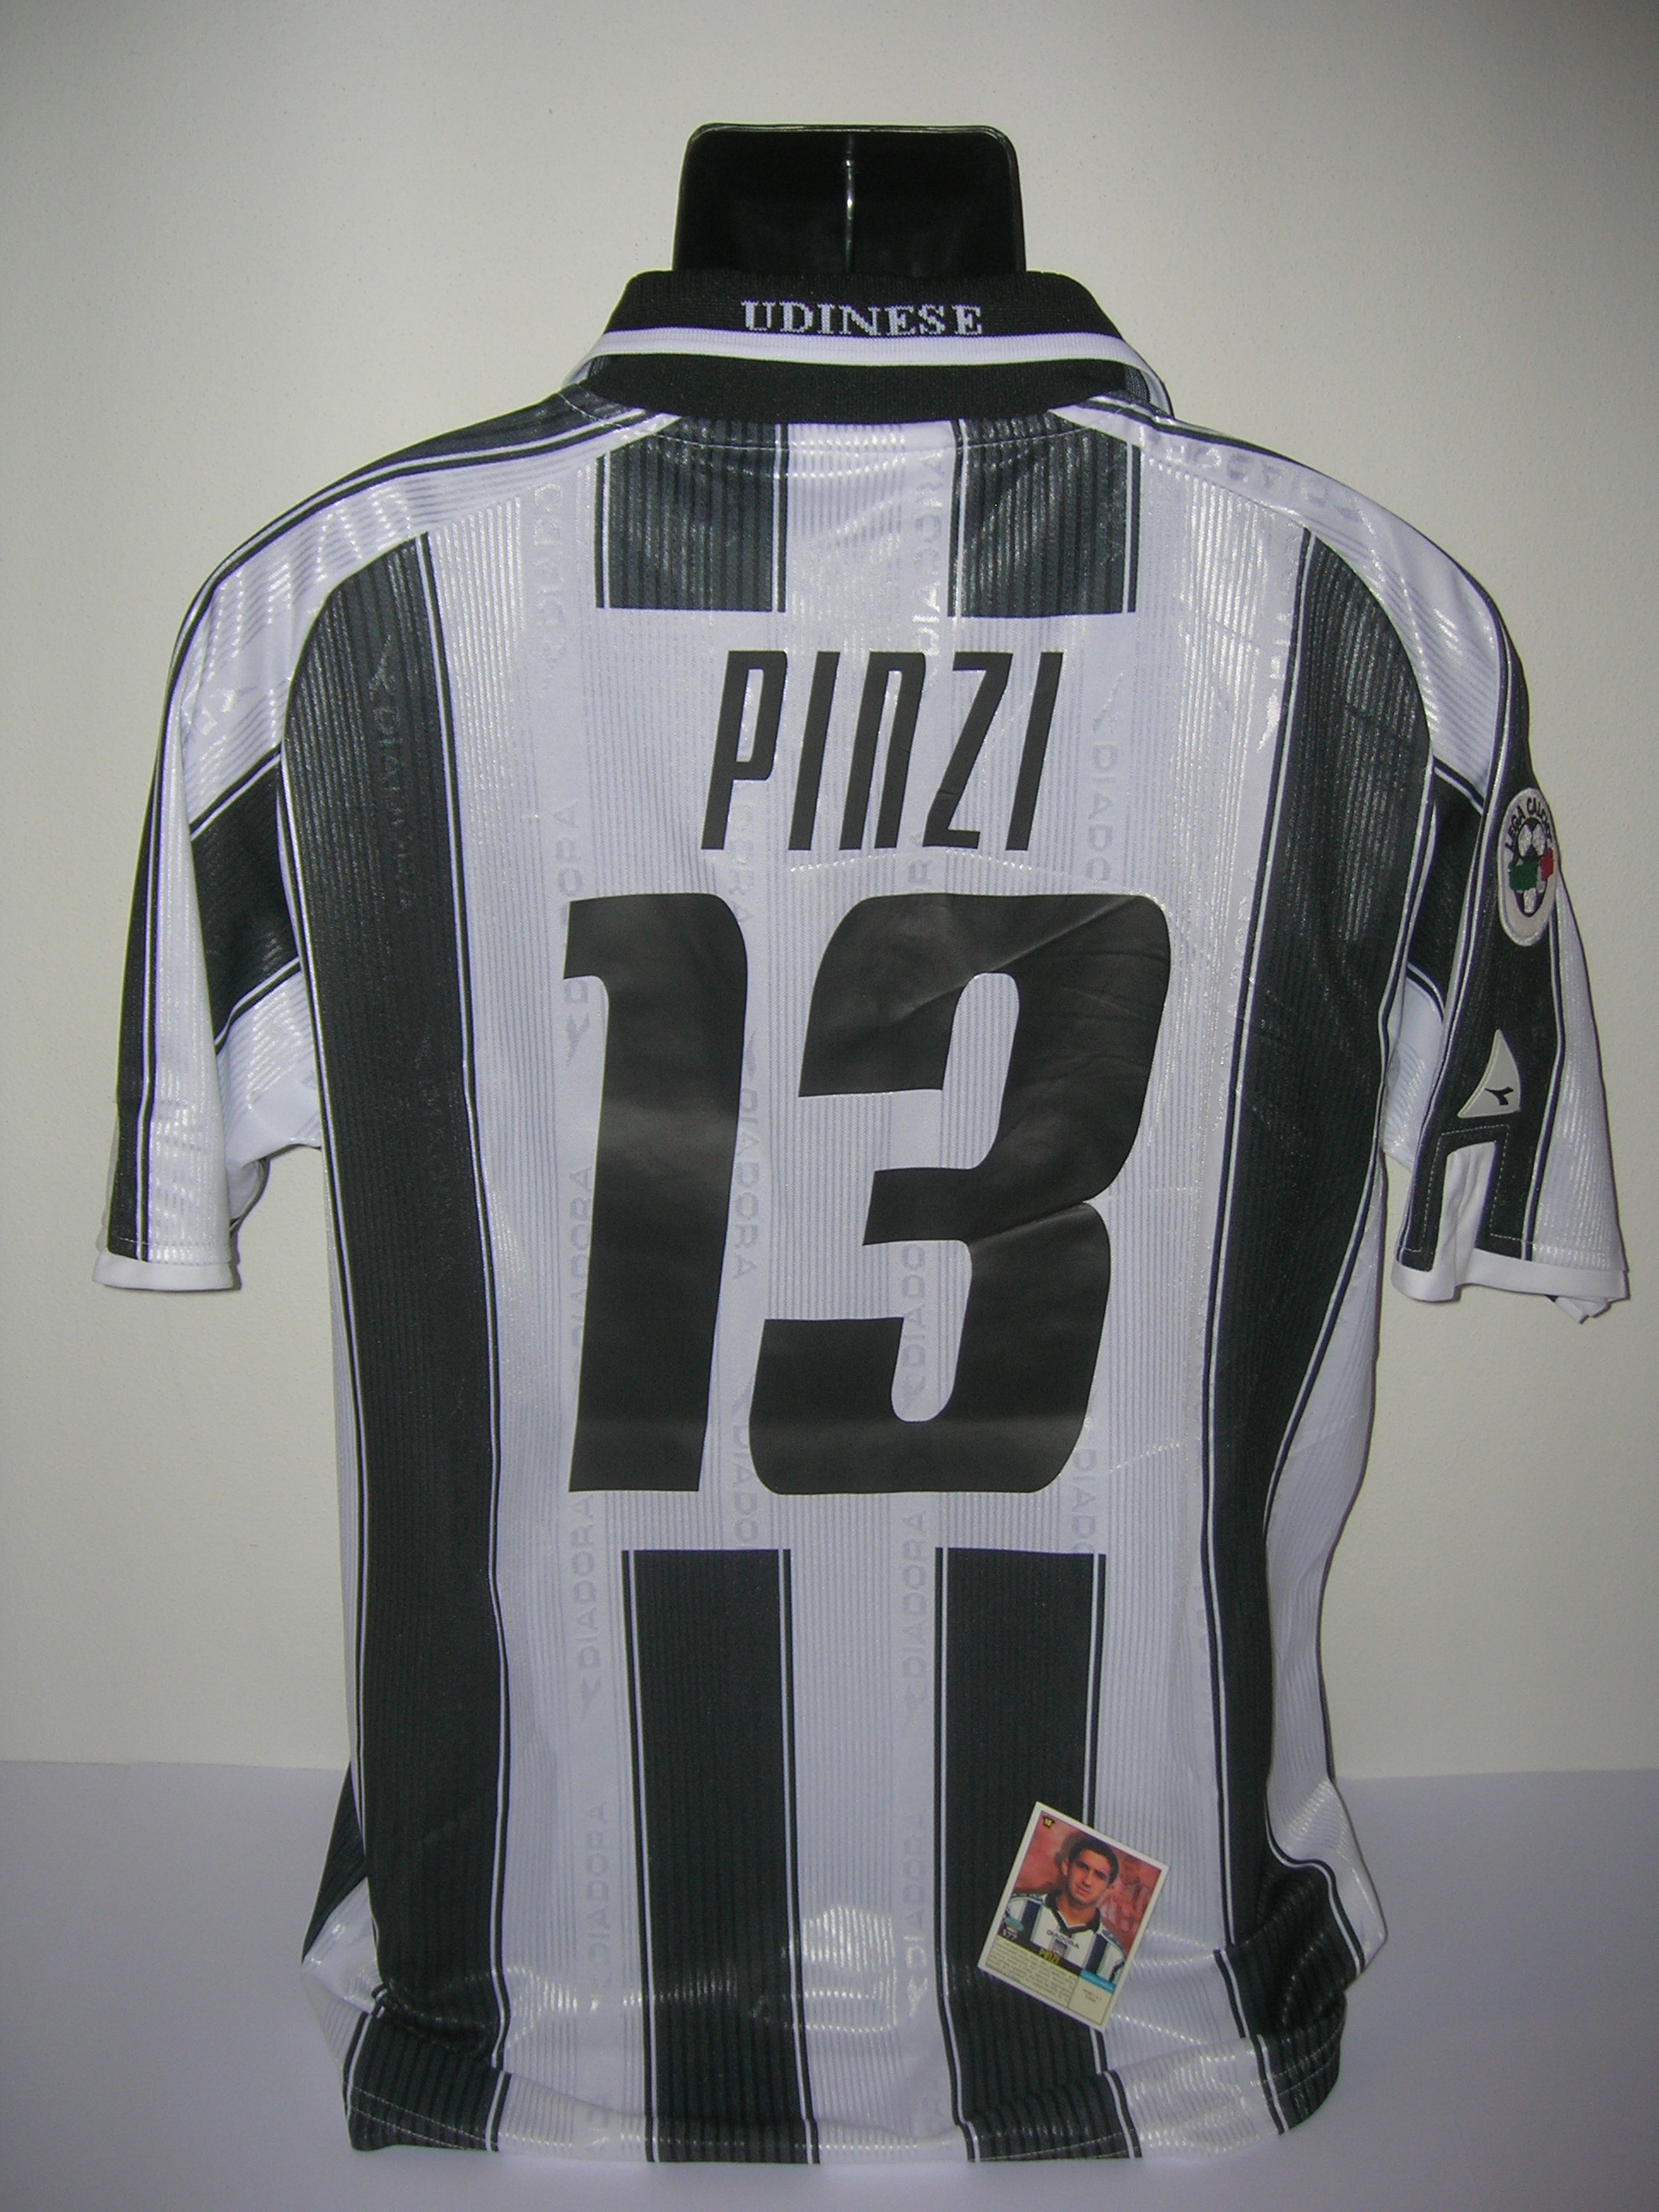 Udinese Pinzi  13  A-2